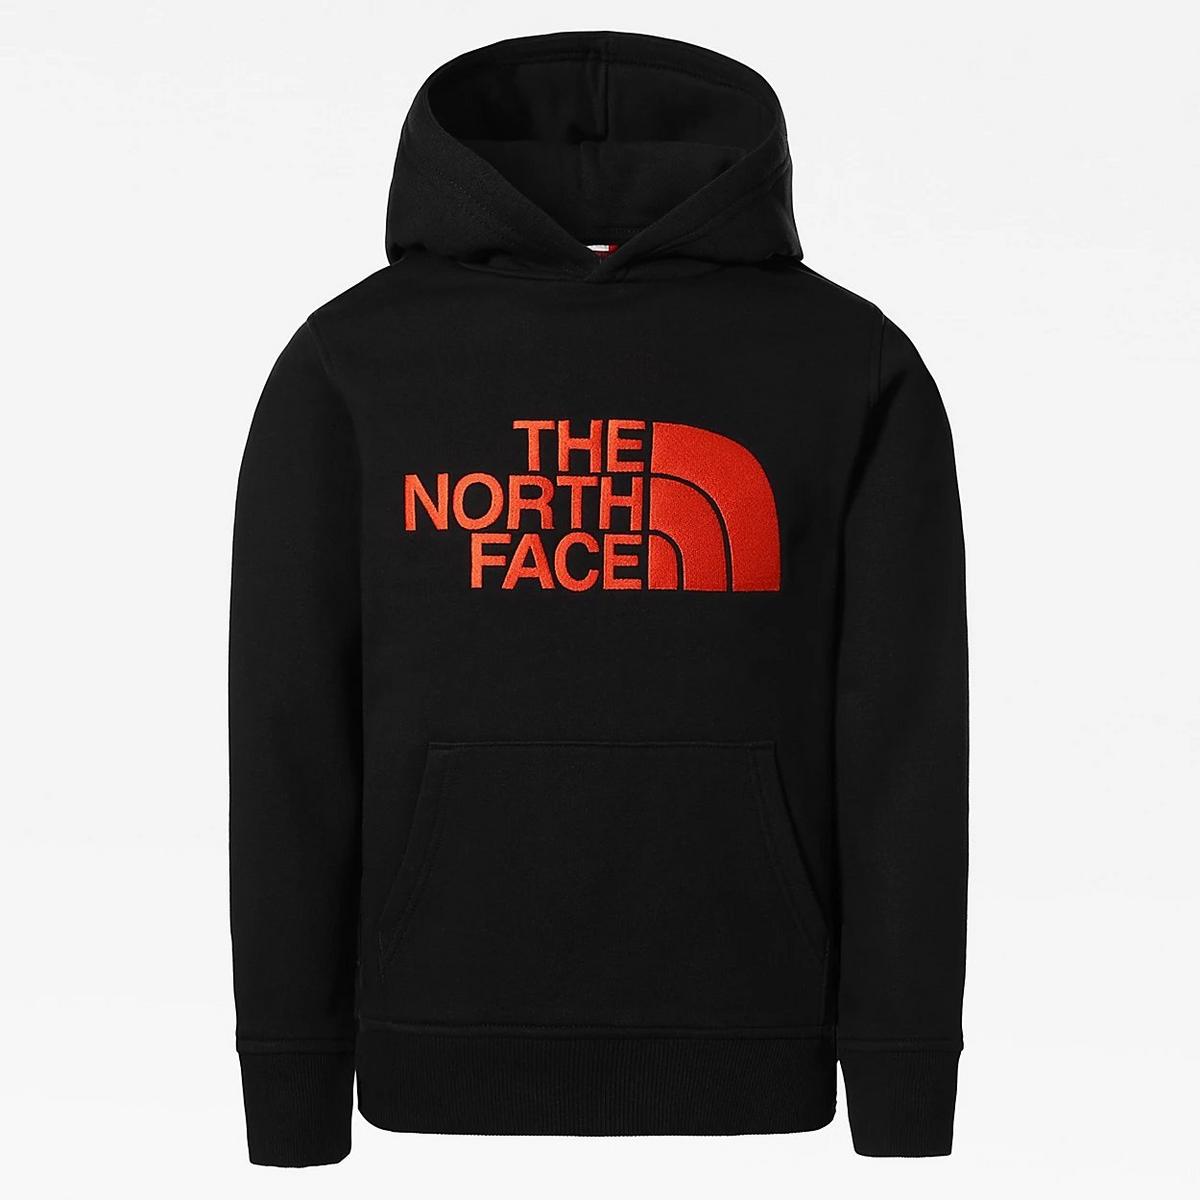 The North Face Kids Drew Peak Hoodie - Black